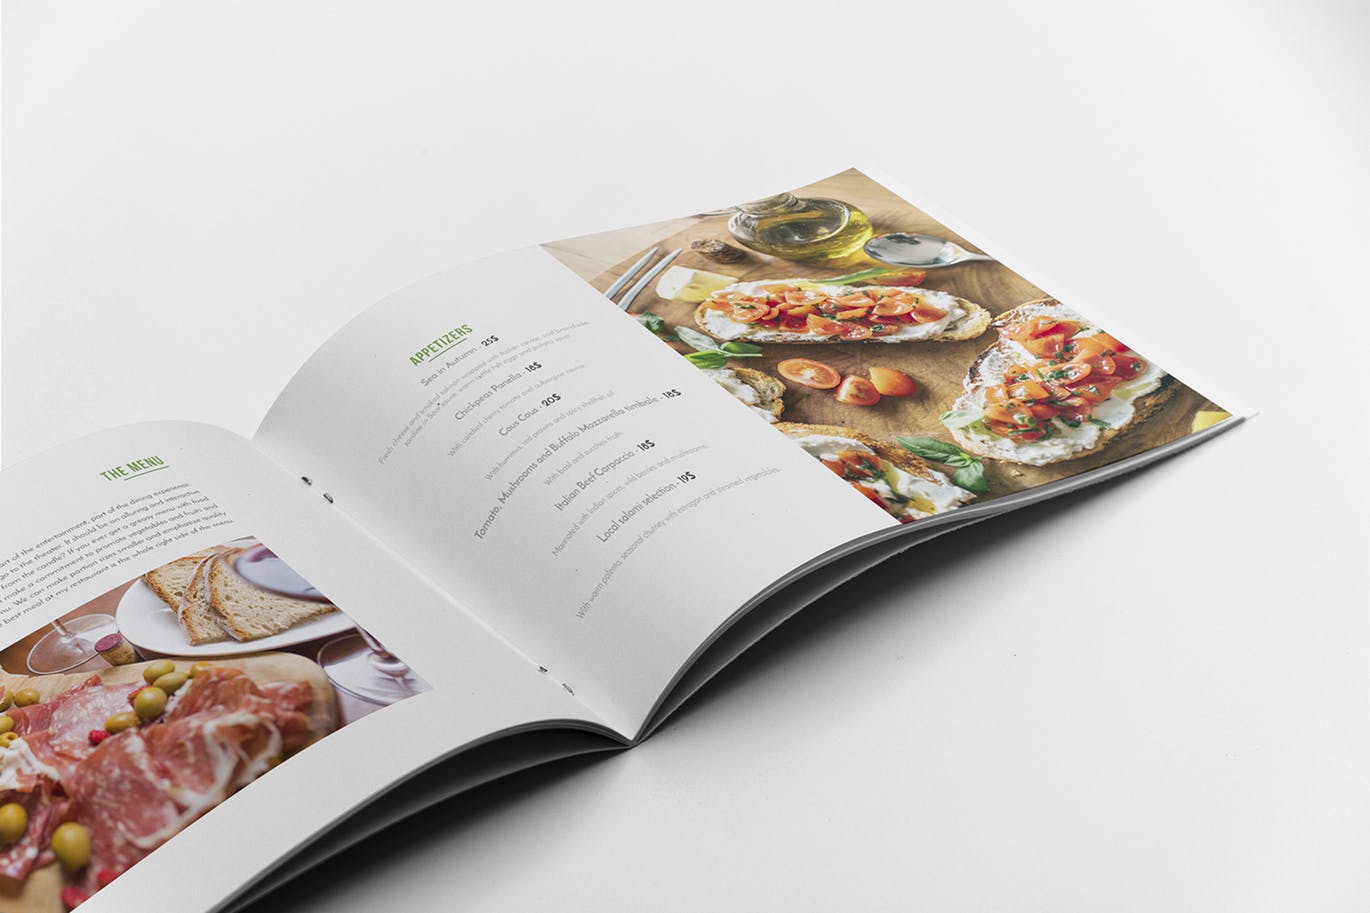 高档西餐厅宣传画册设计模板 Restaurant Brochure Template插图7